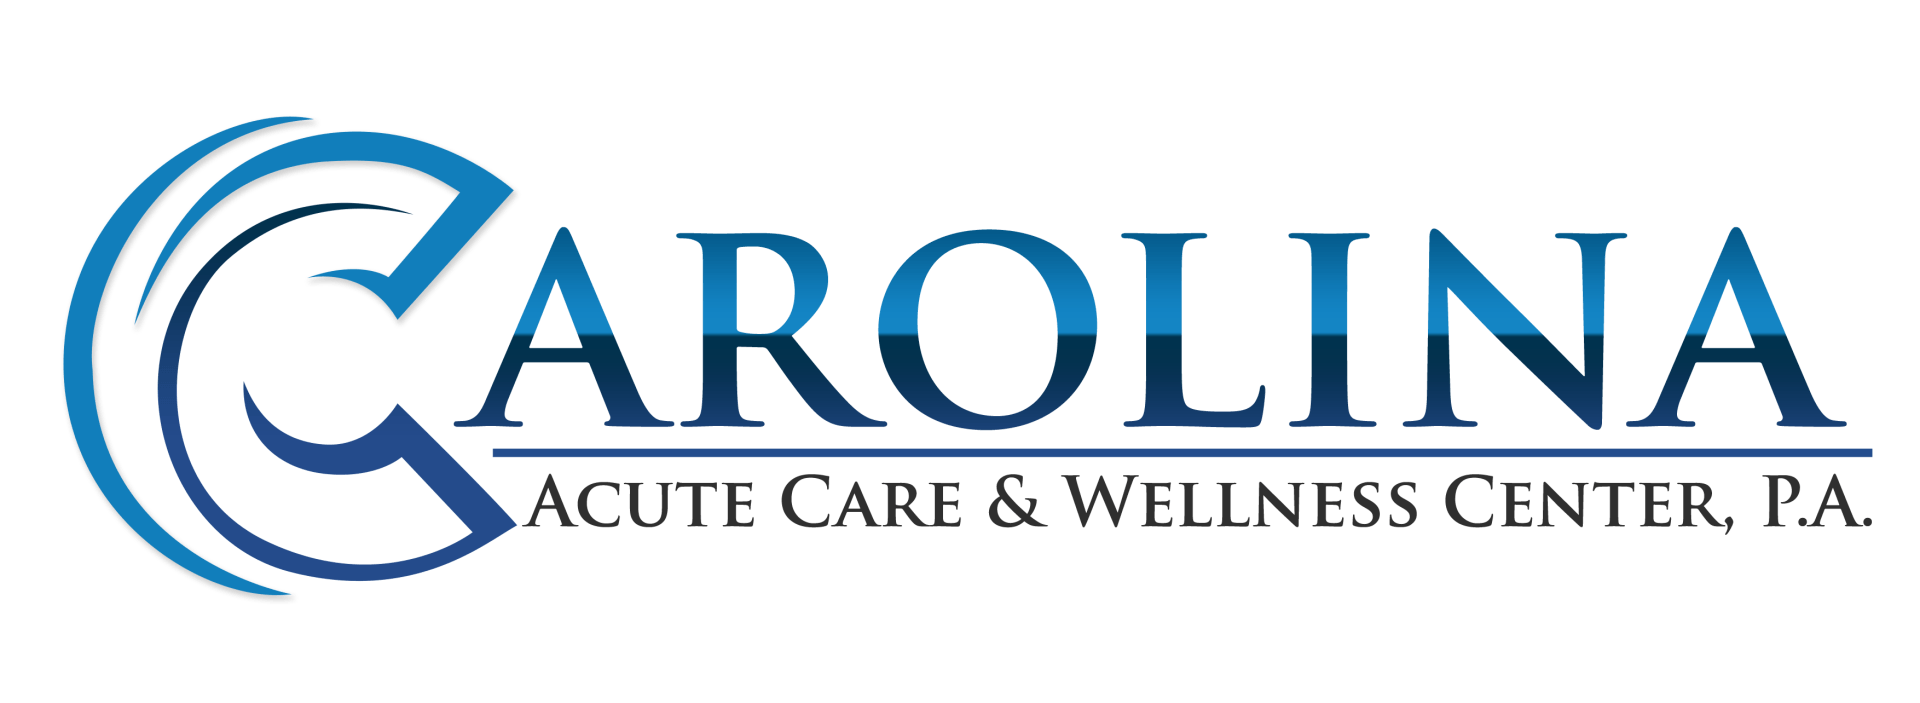 Logo Design for Acute Care & Wellness Center